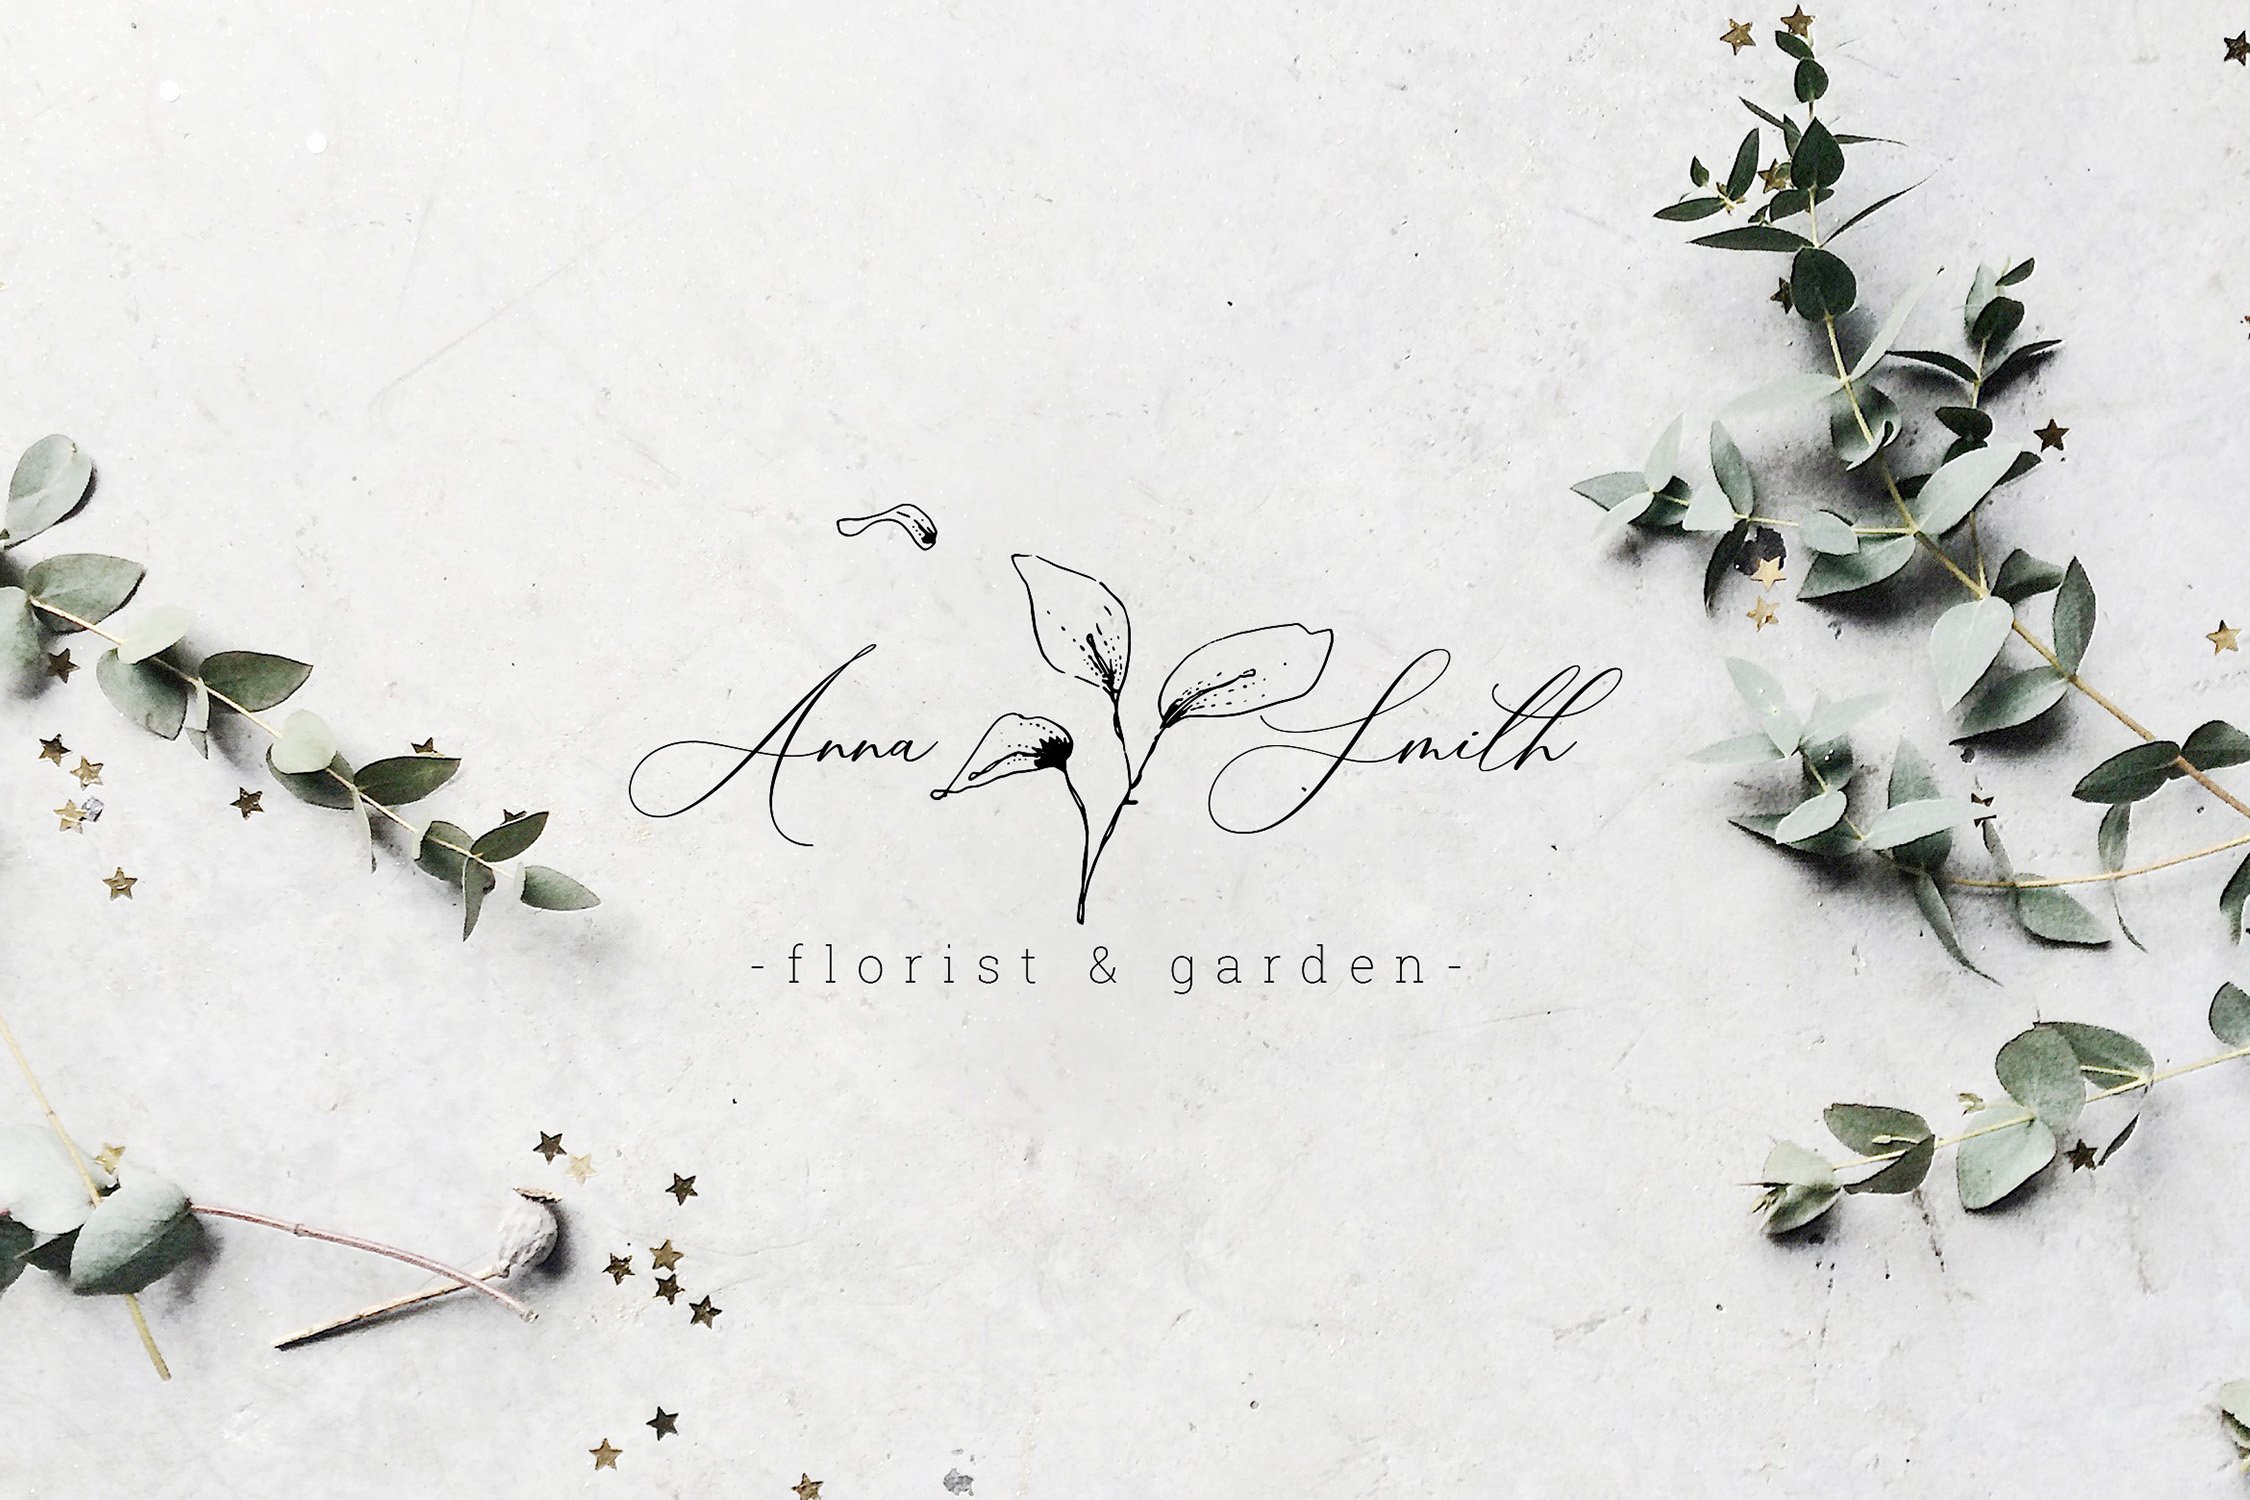 Floral Outline Illustration & Logo Pack